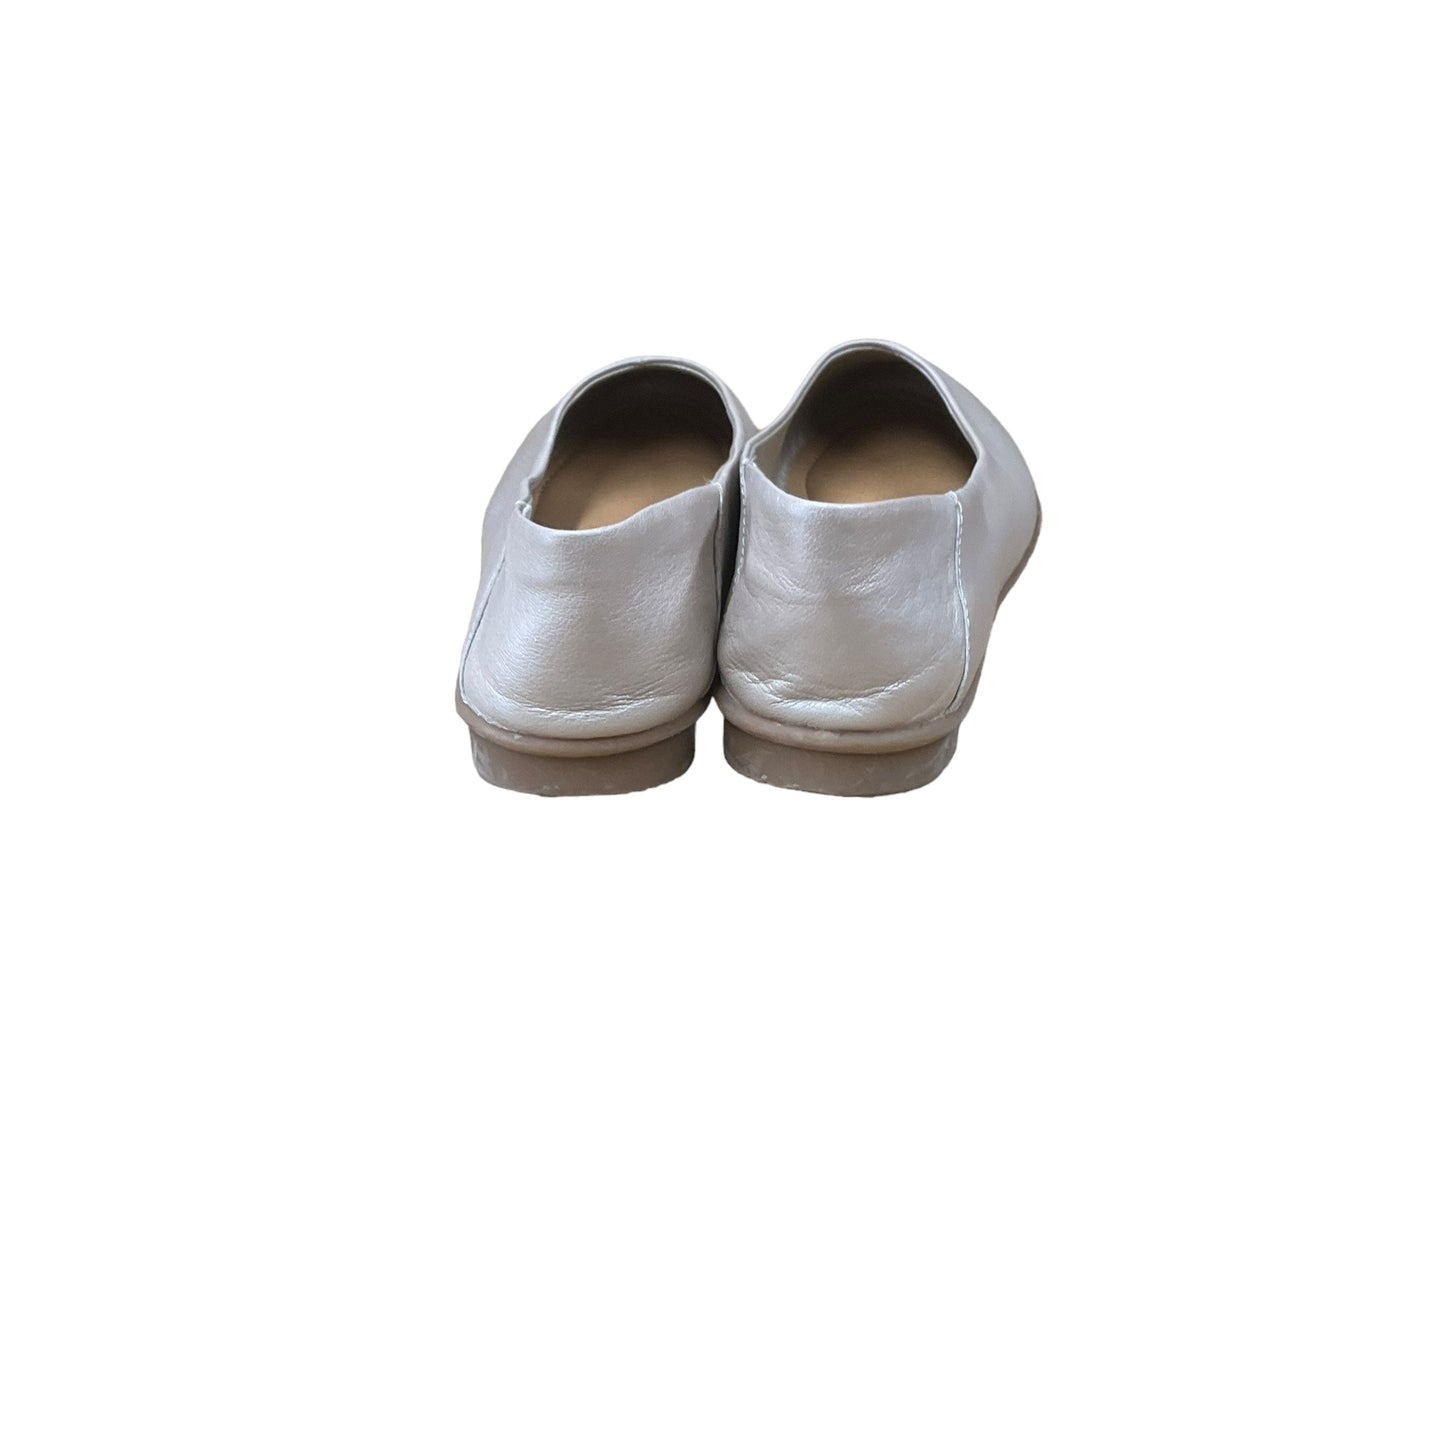 Beige Shoes Flats Cmc, Size 8